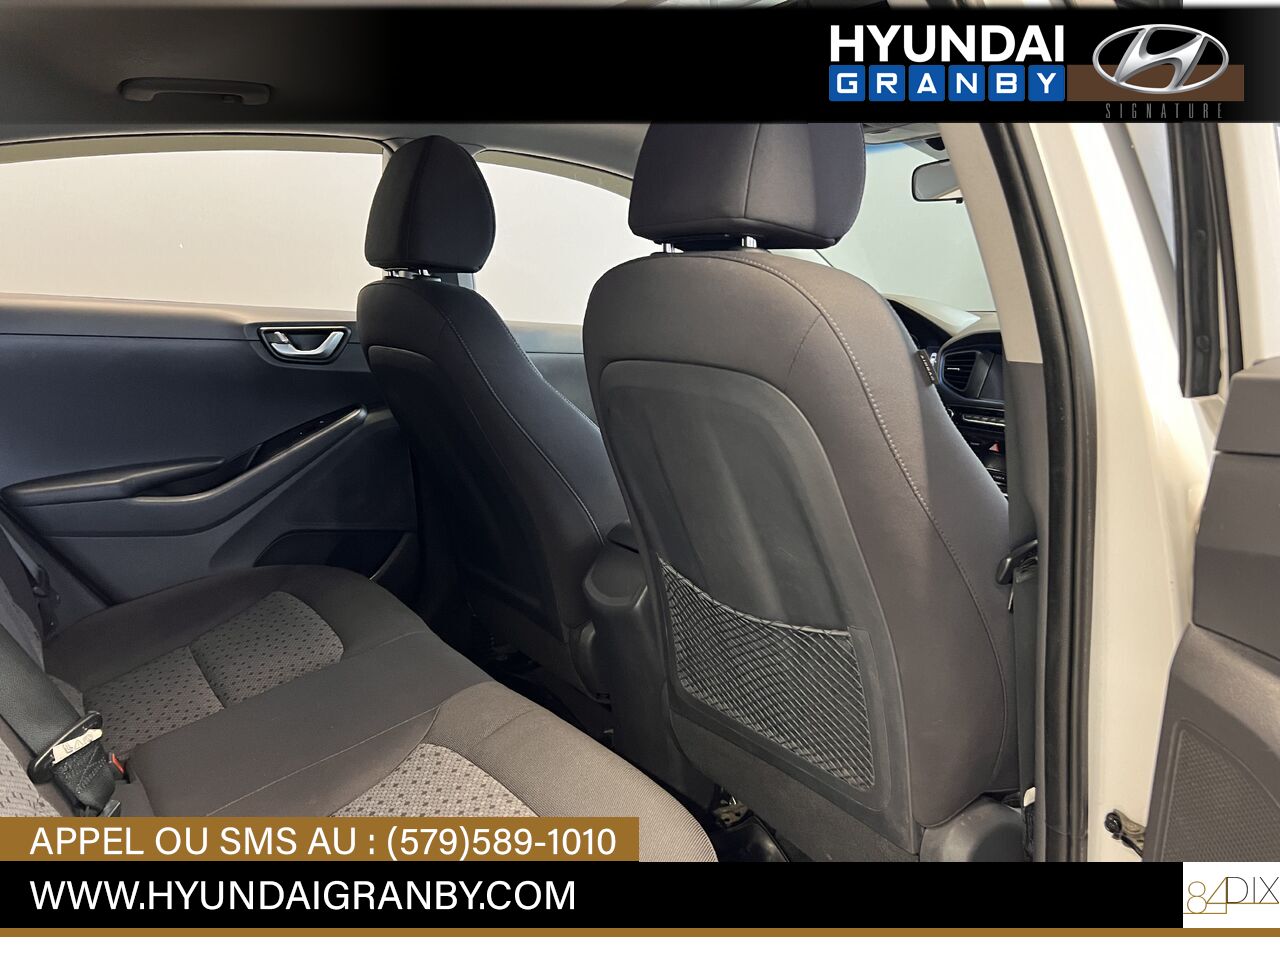 Hyundai Ioniq hybride 2017 Granby - photo #29